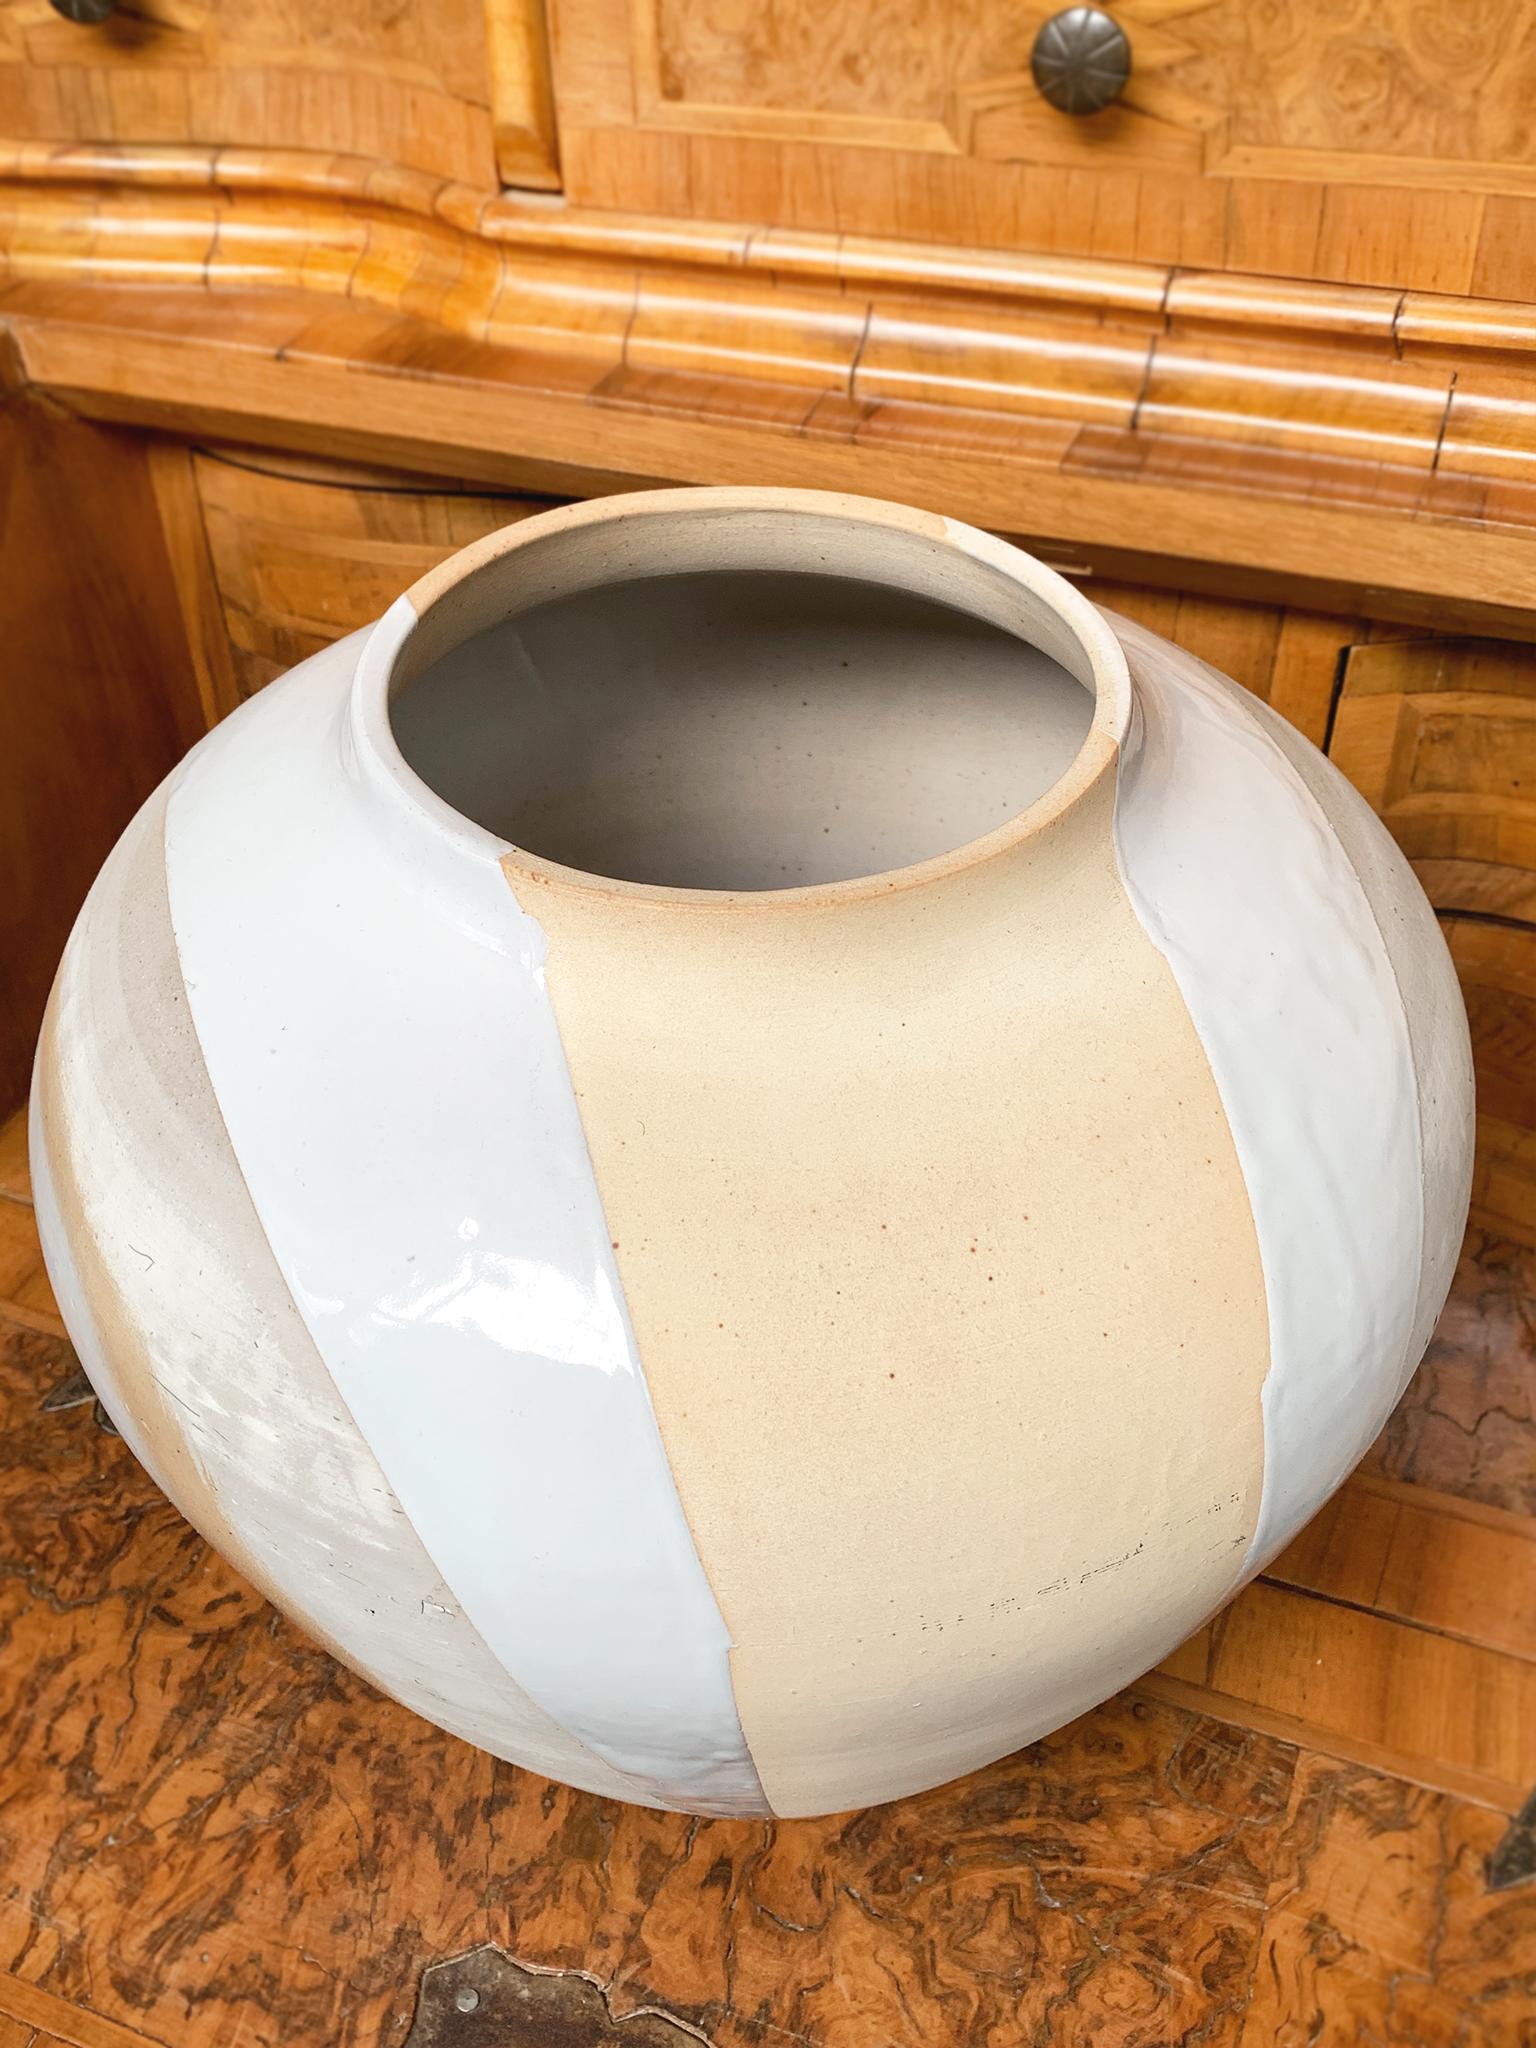 Aus einer Serie von modisch inspirierten Keramiken von Thom Lussier, die exklusiv für Cafiero Select handgefertigt wurden. Die glatte Glasur und das matte Craquelé-Finish ergeben eine stimmungsvolle Mischung aus Texturen und Pastelltönen, die wie